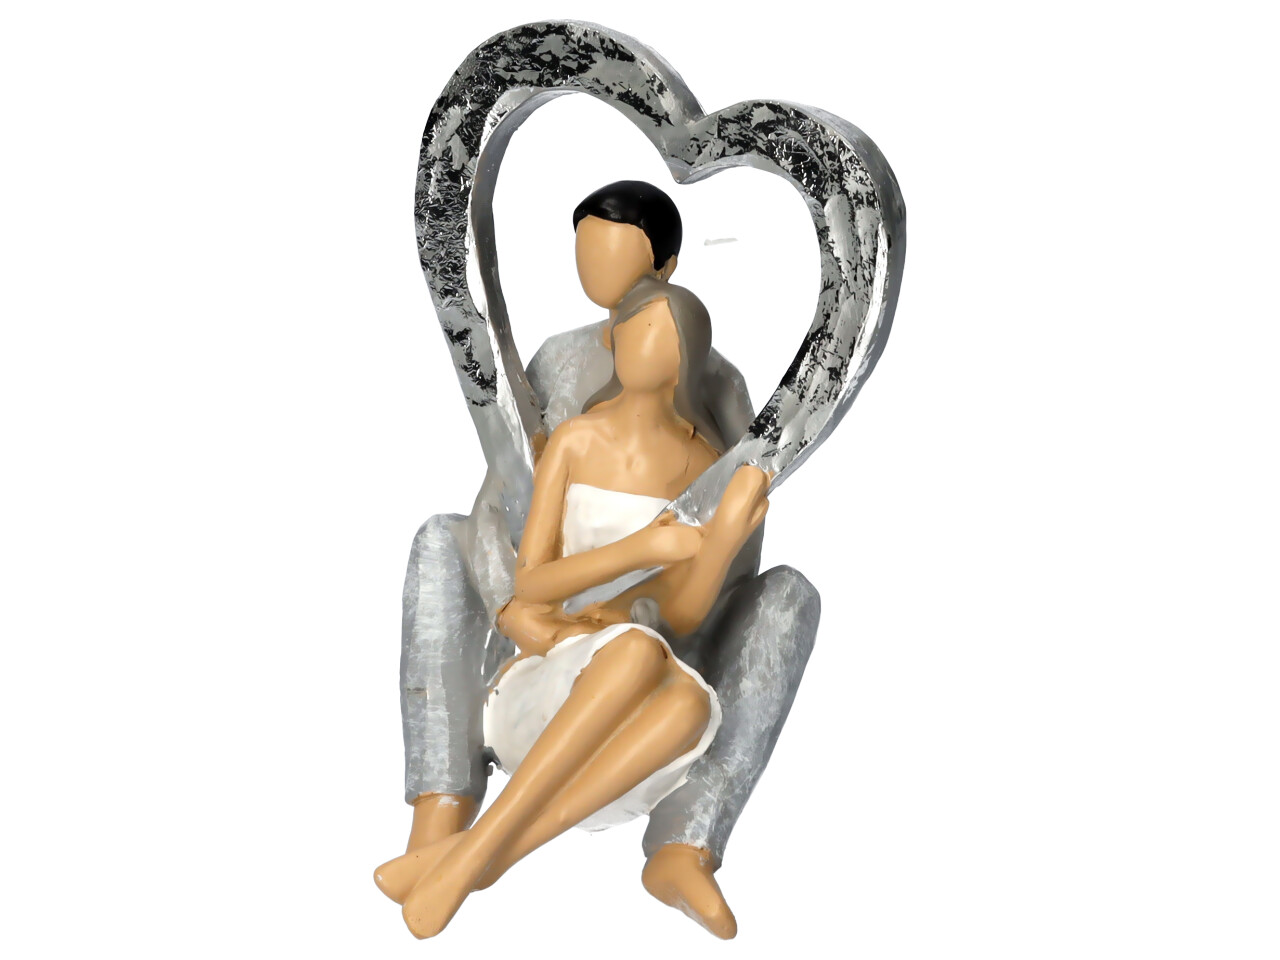 Liebespaar Figur sitzend halten ein silber Herz das Oberkörper umrandet Frontalansicht